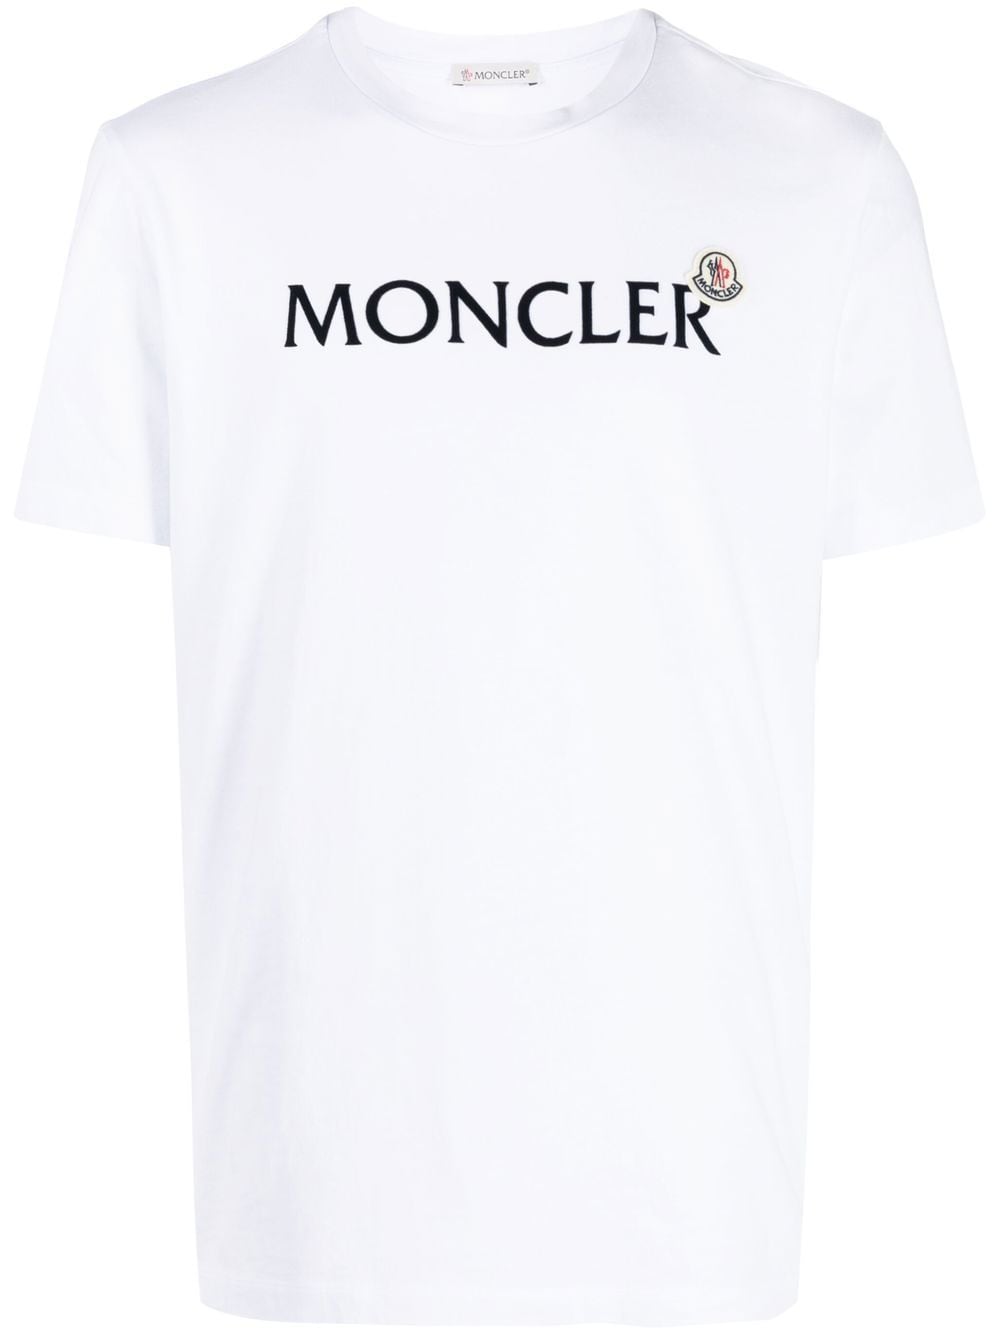 MONCLERのTシャツ